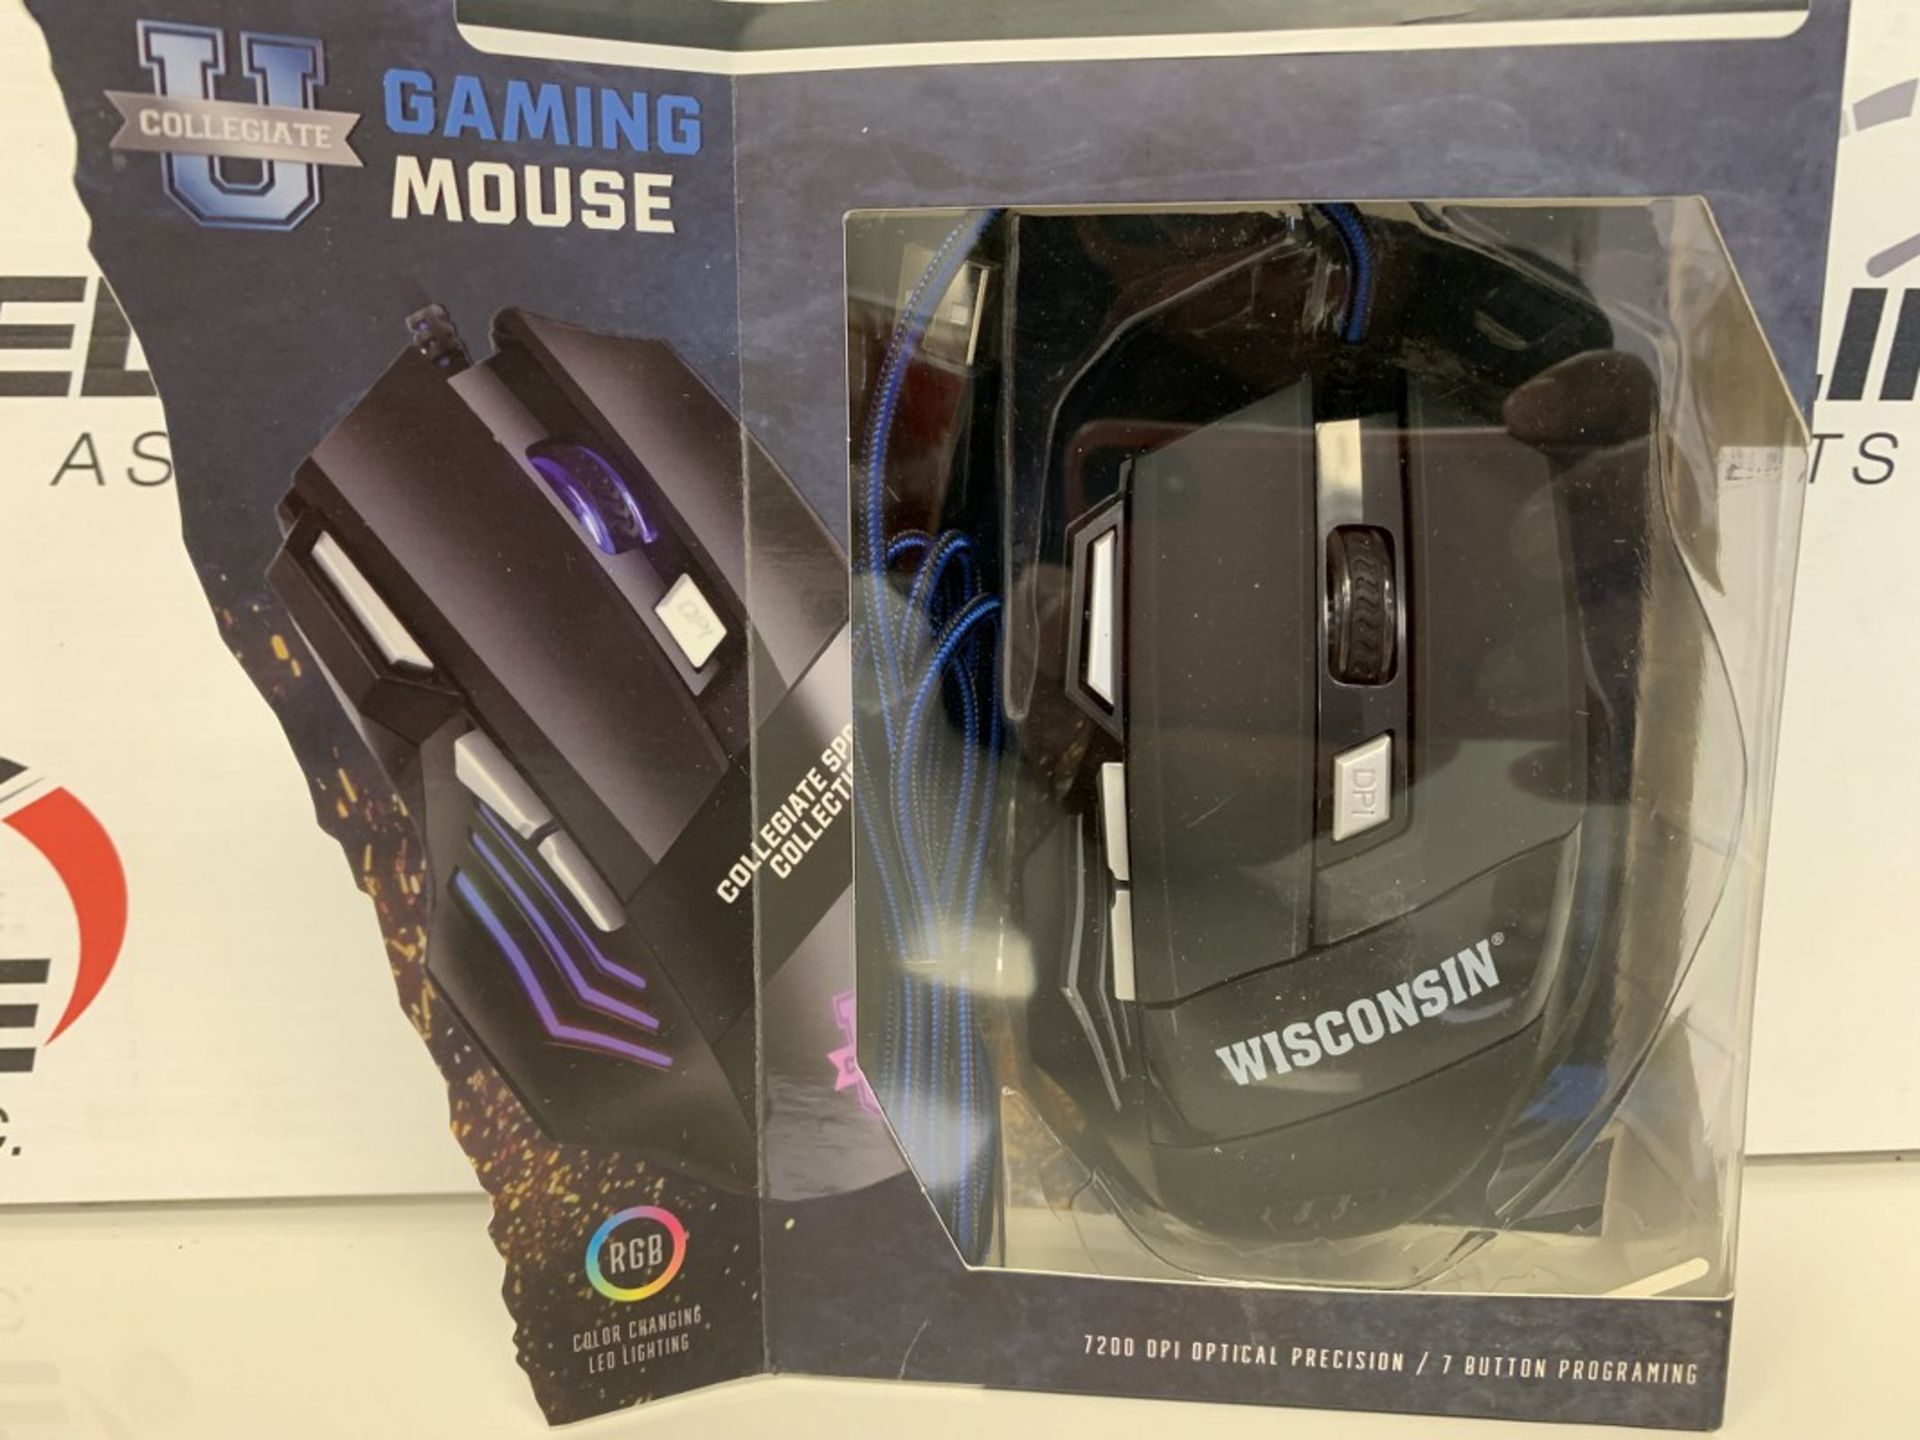 U Collegiate - Rgb Gaming Mouse - Image 2 of 2